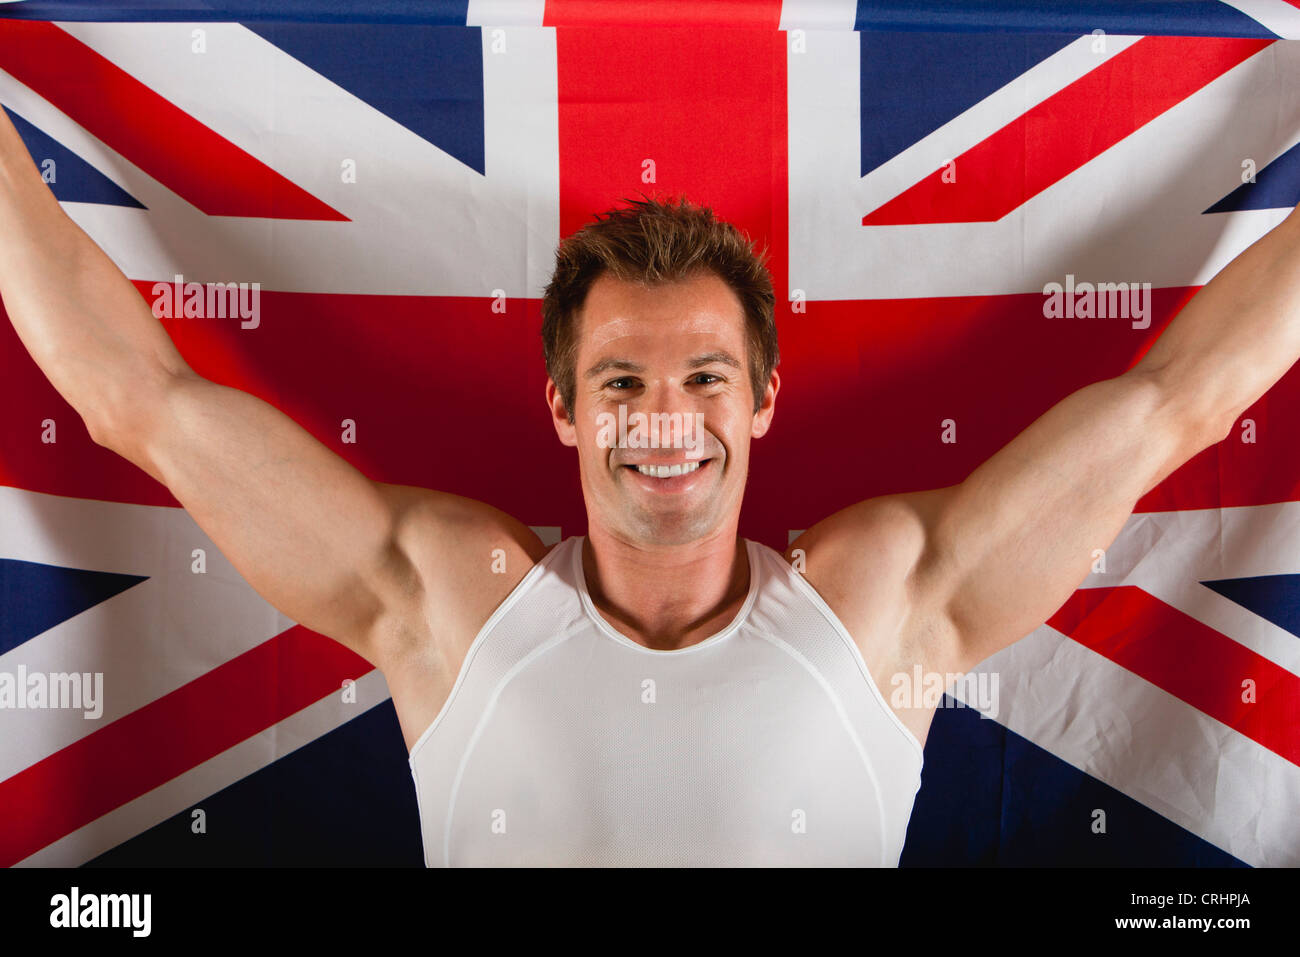 Männlicher Athlet vor britischen Flagge Stockfoto